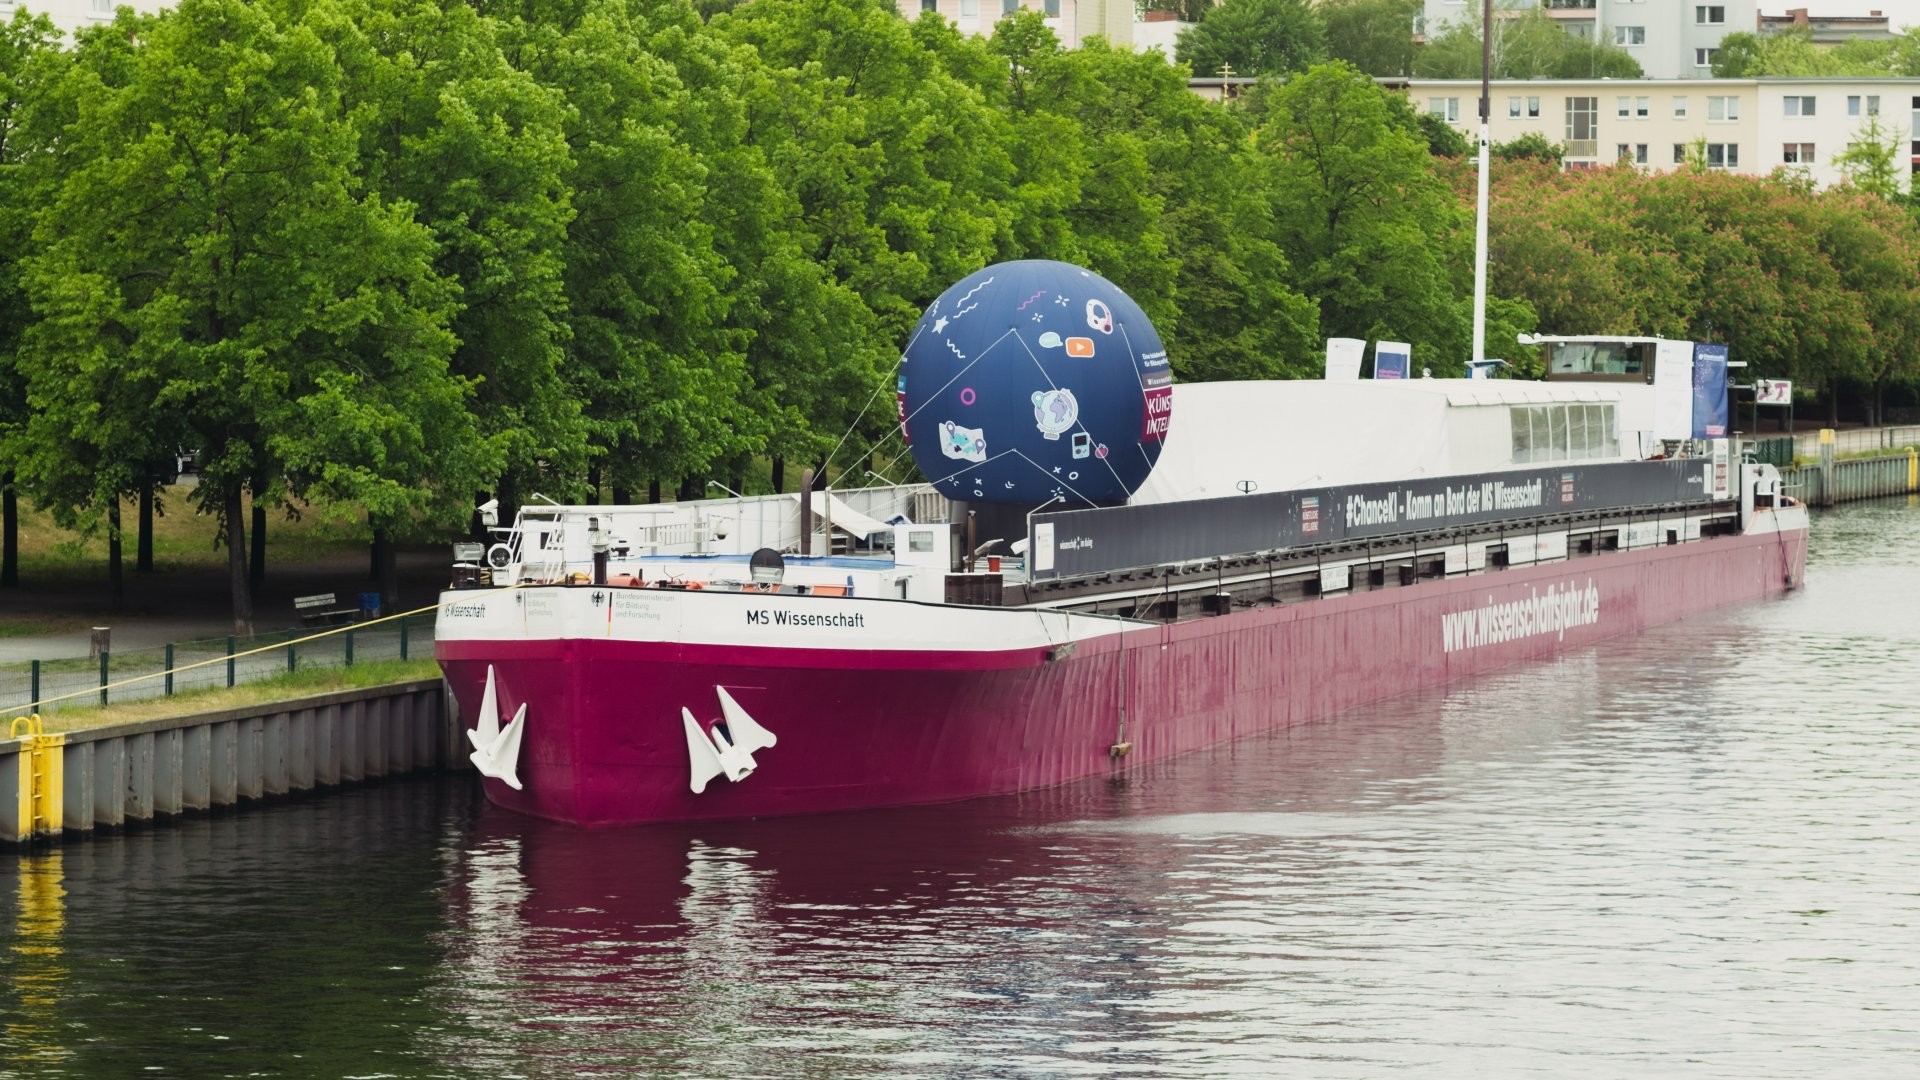 27 Städte besucht das Ausstellungsschiff MS Wissenschaft 2019 in Deutschland, anschließend geht die Reise weiter bis nach Wien. 